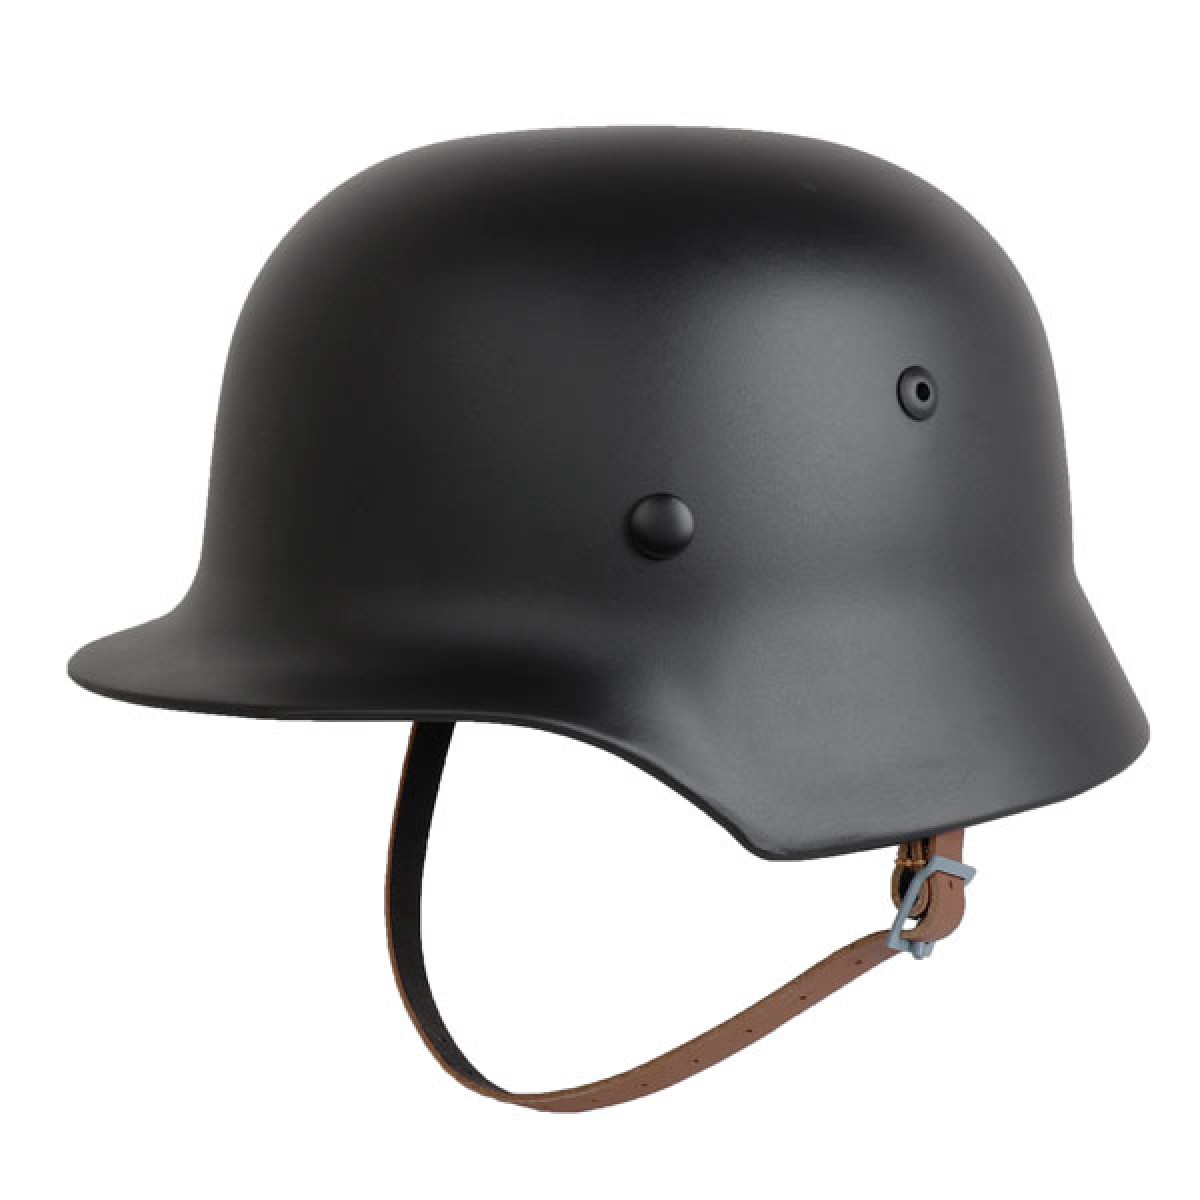 SHENKEL ドイツ軍 WW2 M-35 スチールヘルメット ブラック